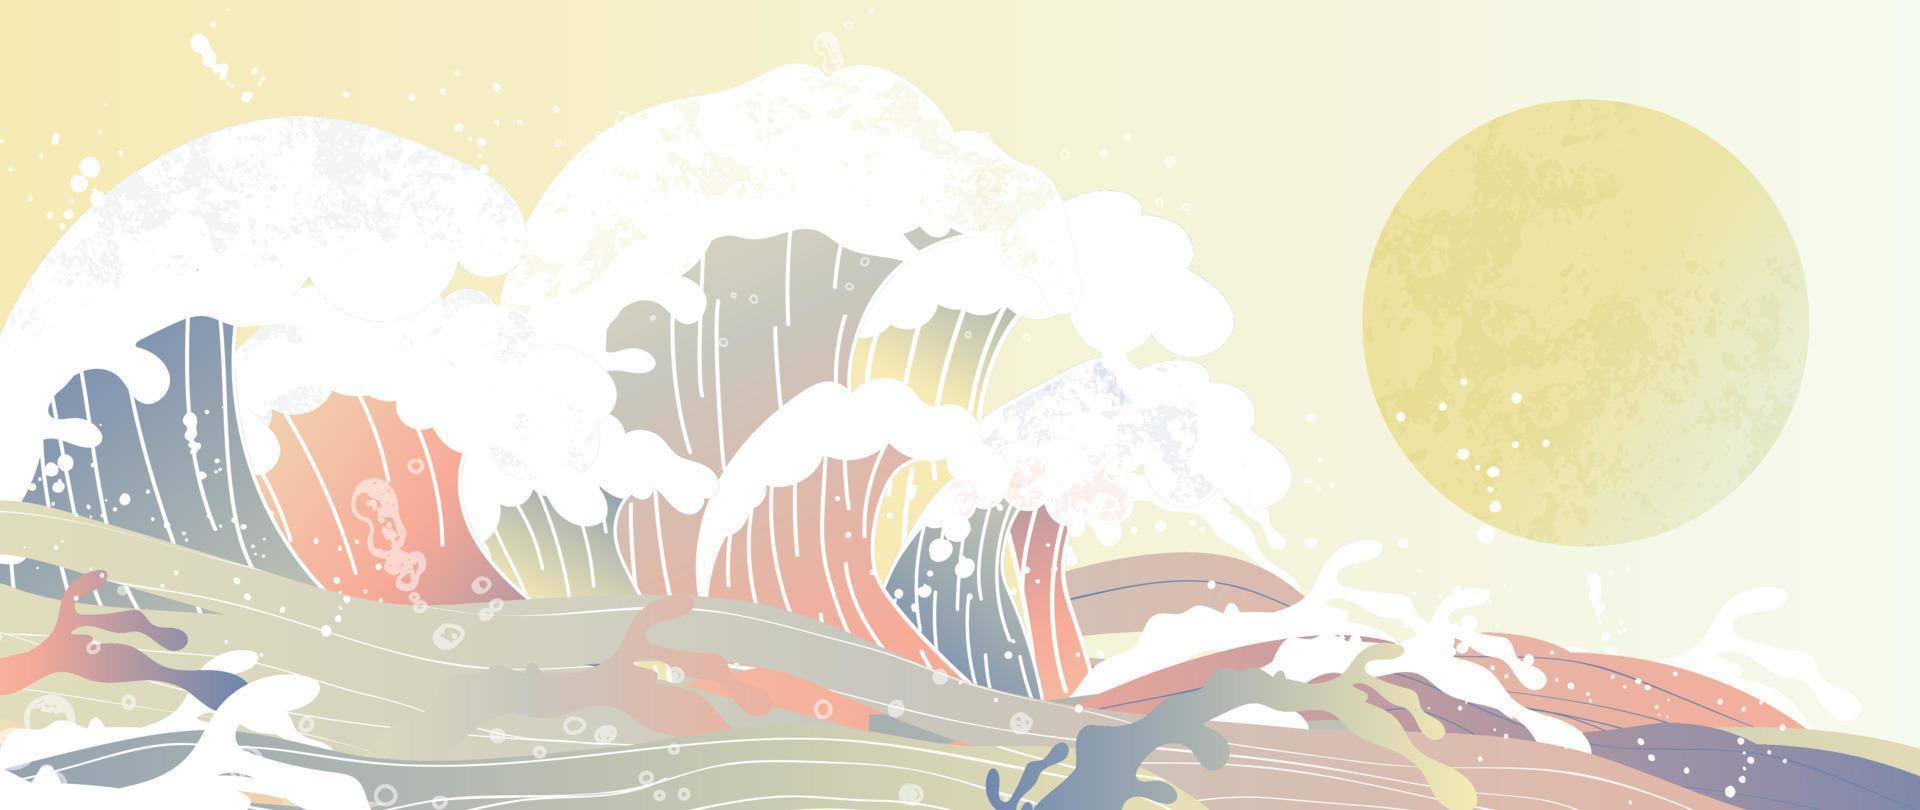 vector de patrón de onda japonés tradicional. patrón de salpicadura de onda de mar de acuarela oriental pintada a mano y fondo de luna. ilustración de diseño de arte para impresión, tela, afiche, decoración del hogar y papel tapiz.